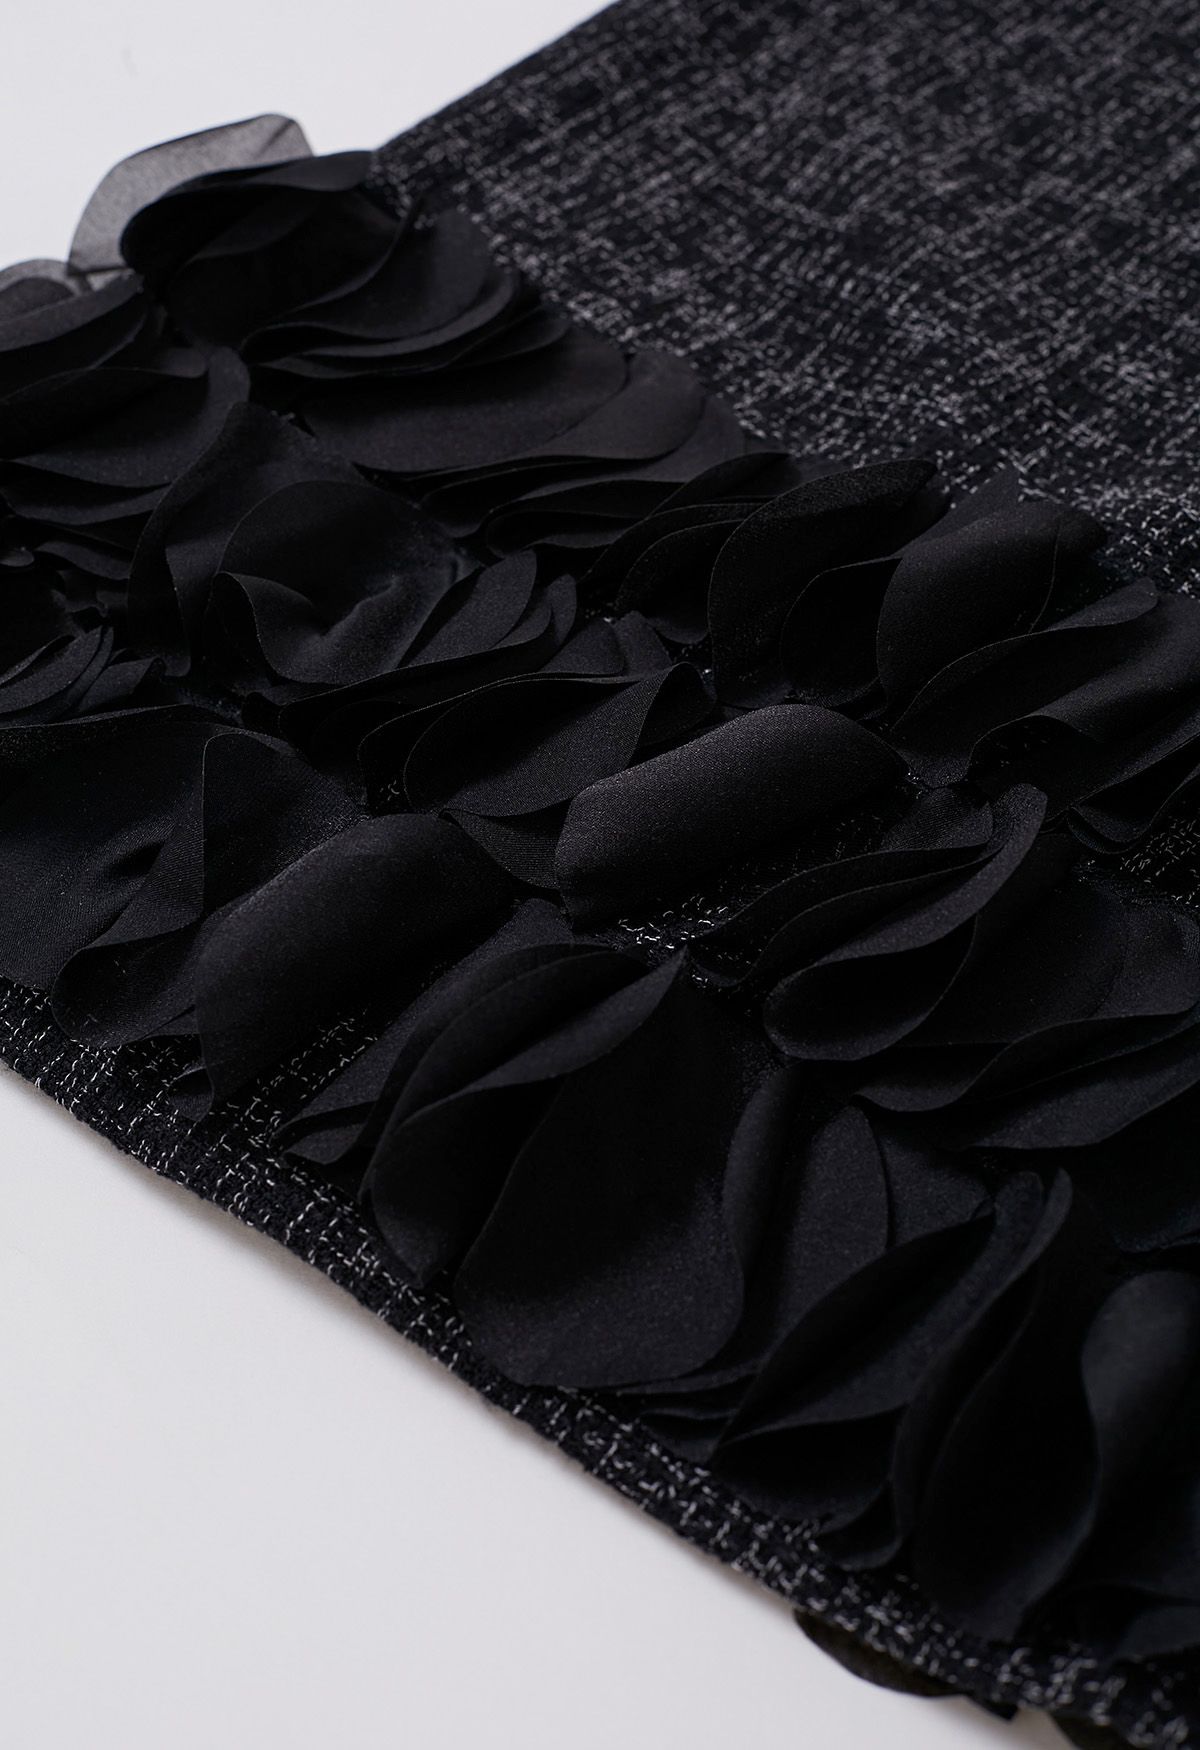 3D البتلات [هملين] فستان تويد بلا أكمام باللون الأسود